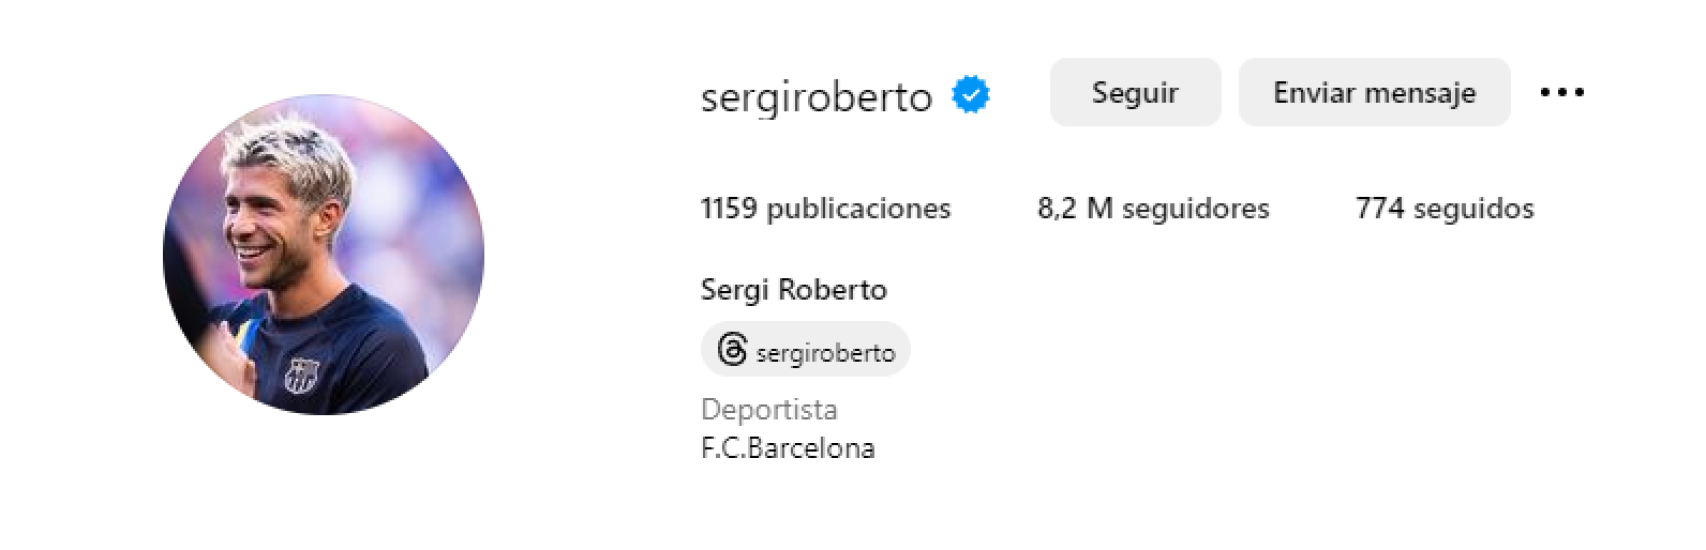 El perfil de Instagram de Sergi Roberto